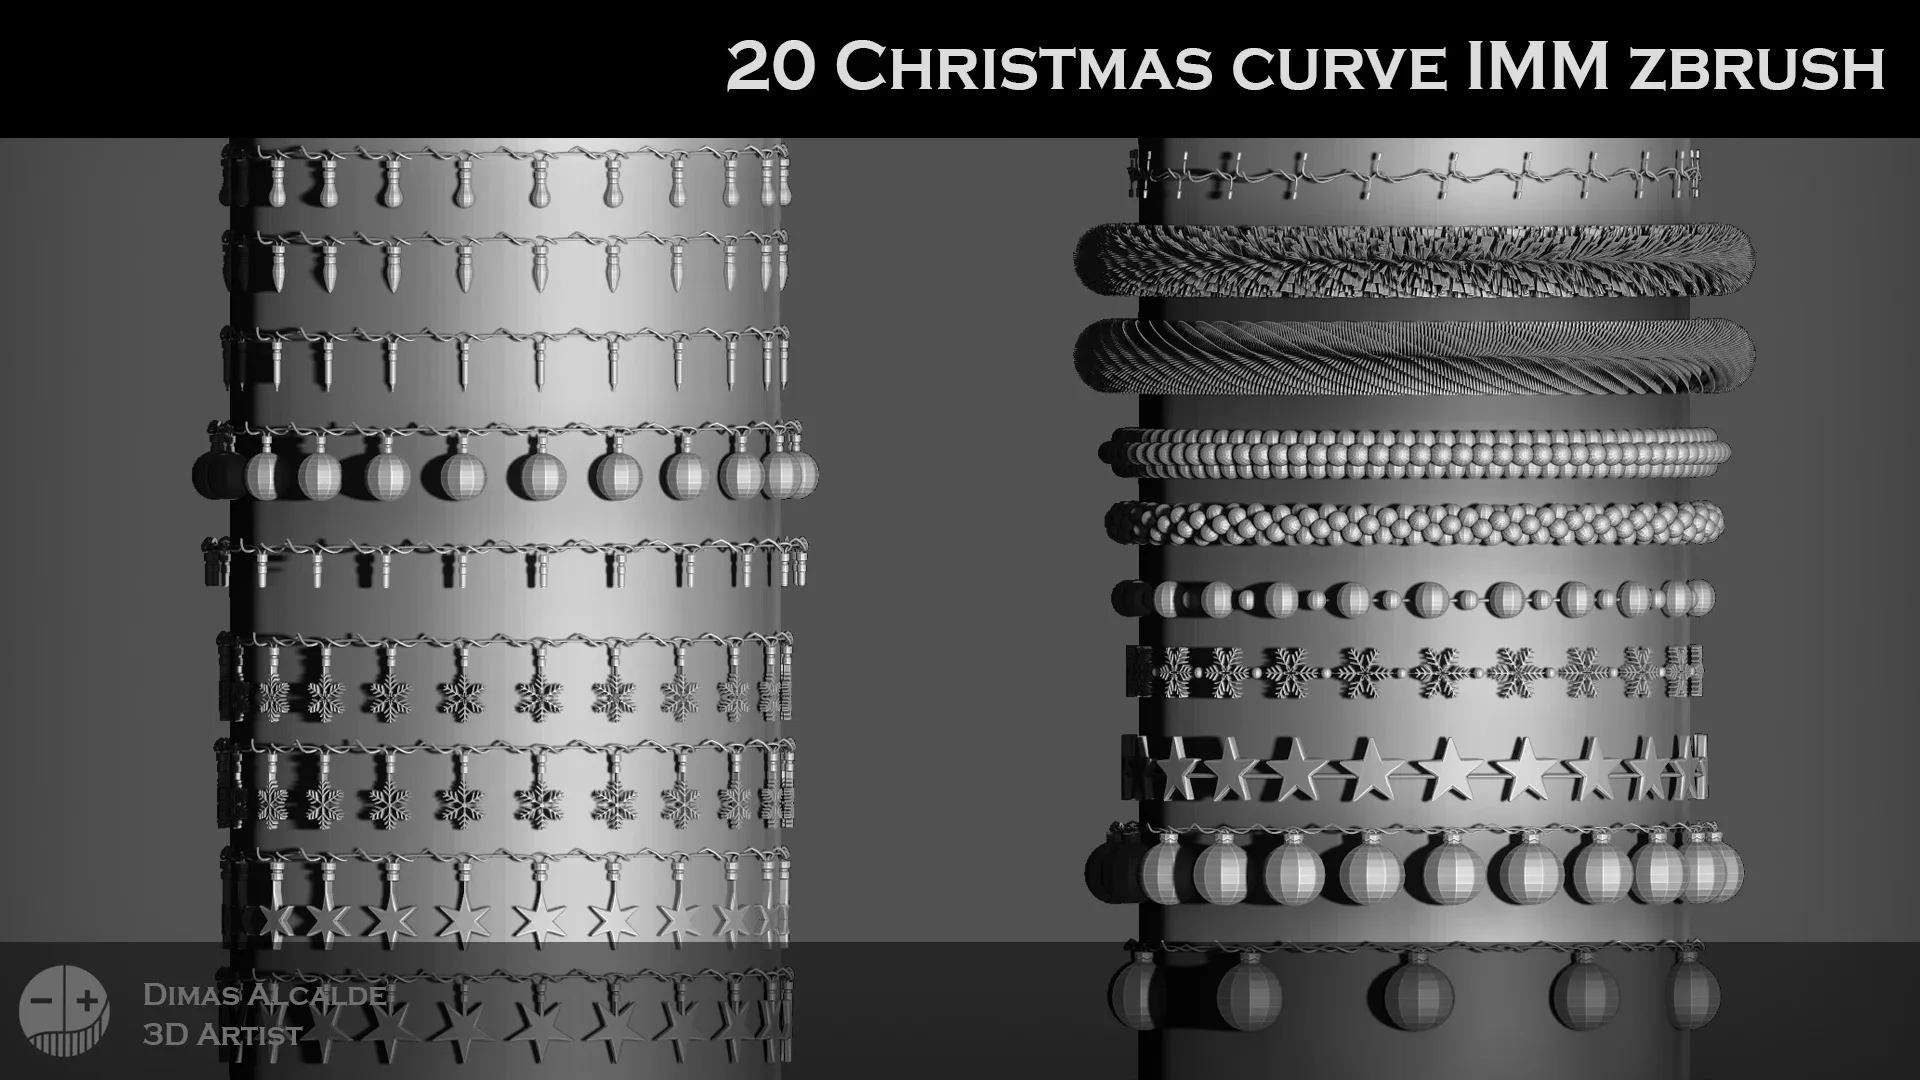 ☃️❄️ 20 Christmas IMM Curve Zbrush Brushes